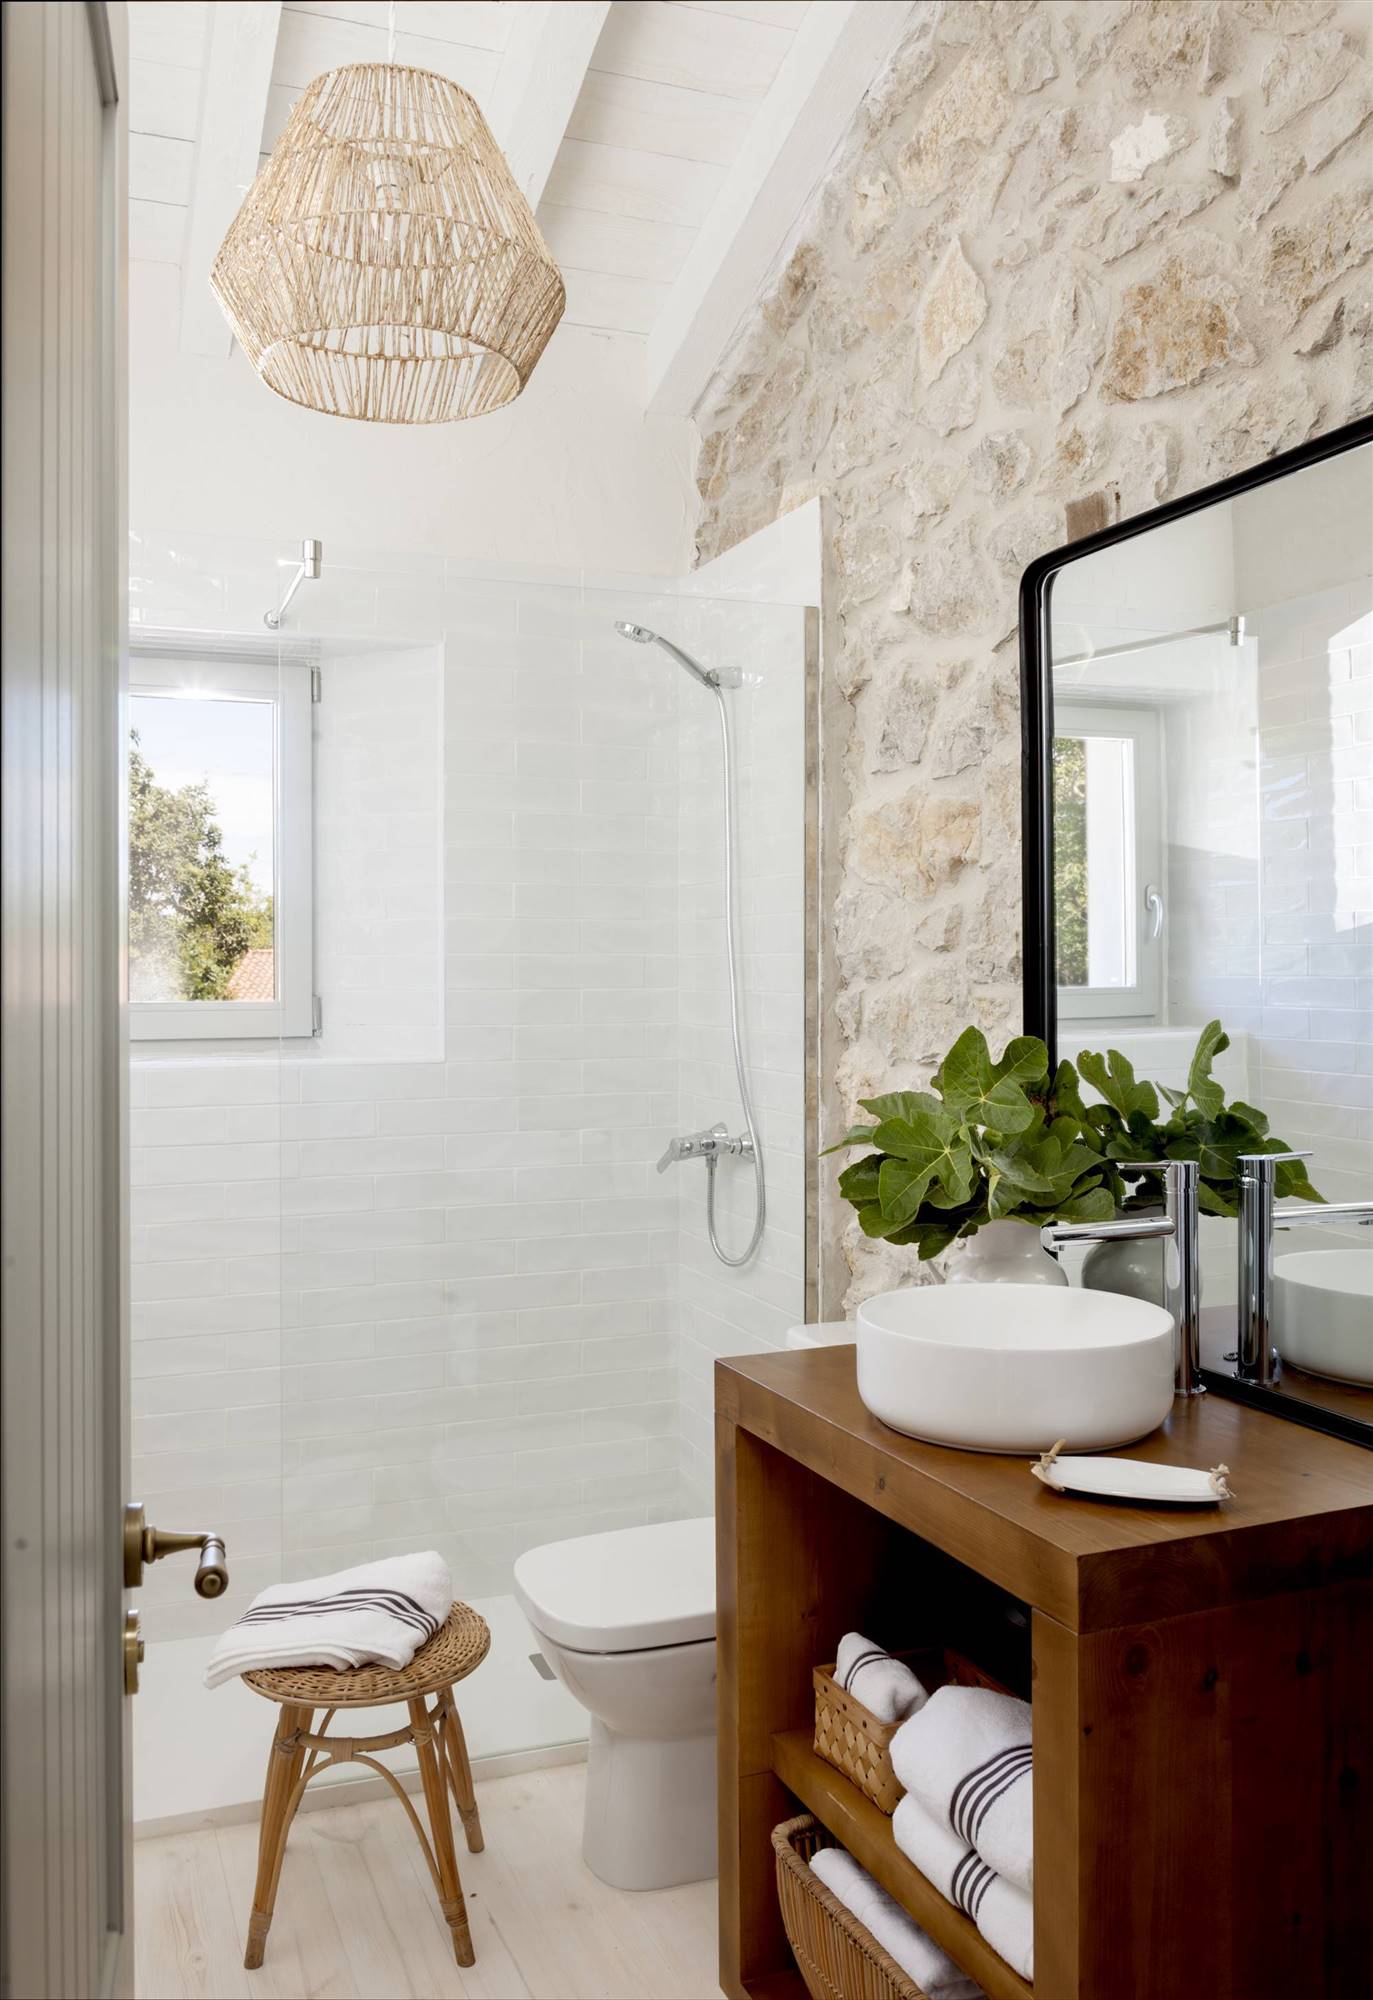 Ban~o rústico con pared de piedra, azulejos blancos en la ducha y mueble de madera. 